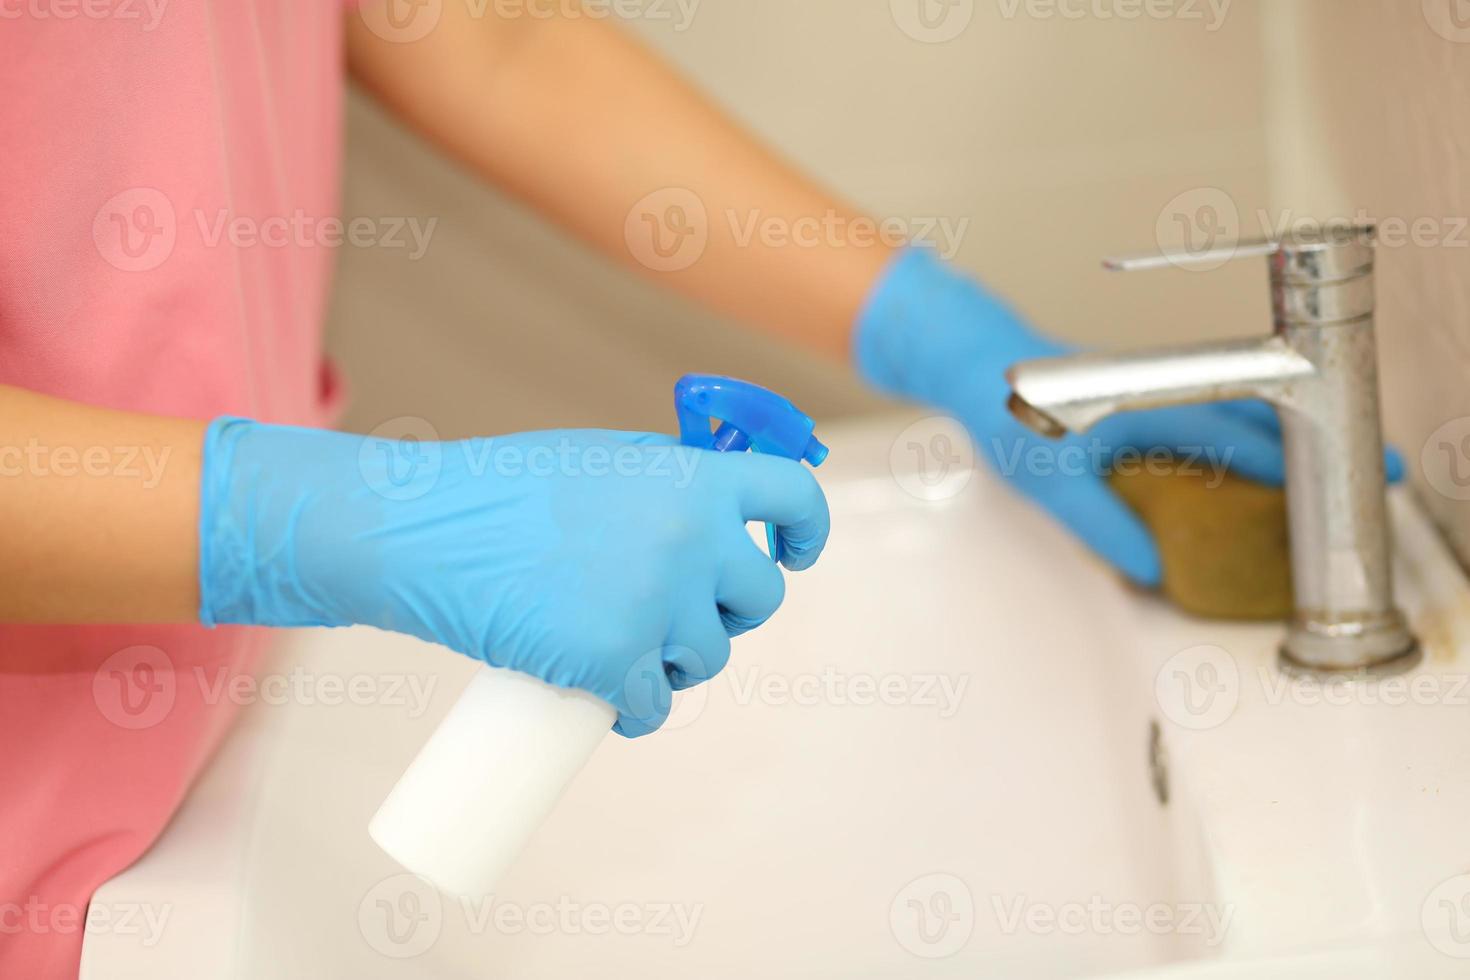 higiene. mãos de limpeza. lavar as mãos com álcool gel ou sabão. jovem mulher lavando as mãos com sabão sobre a pia no banheiro, closeup. covid19. coronavírus. foto